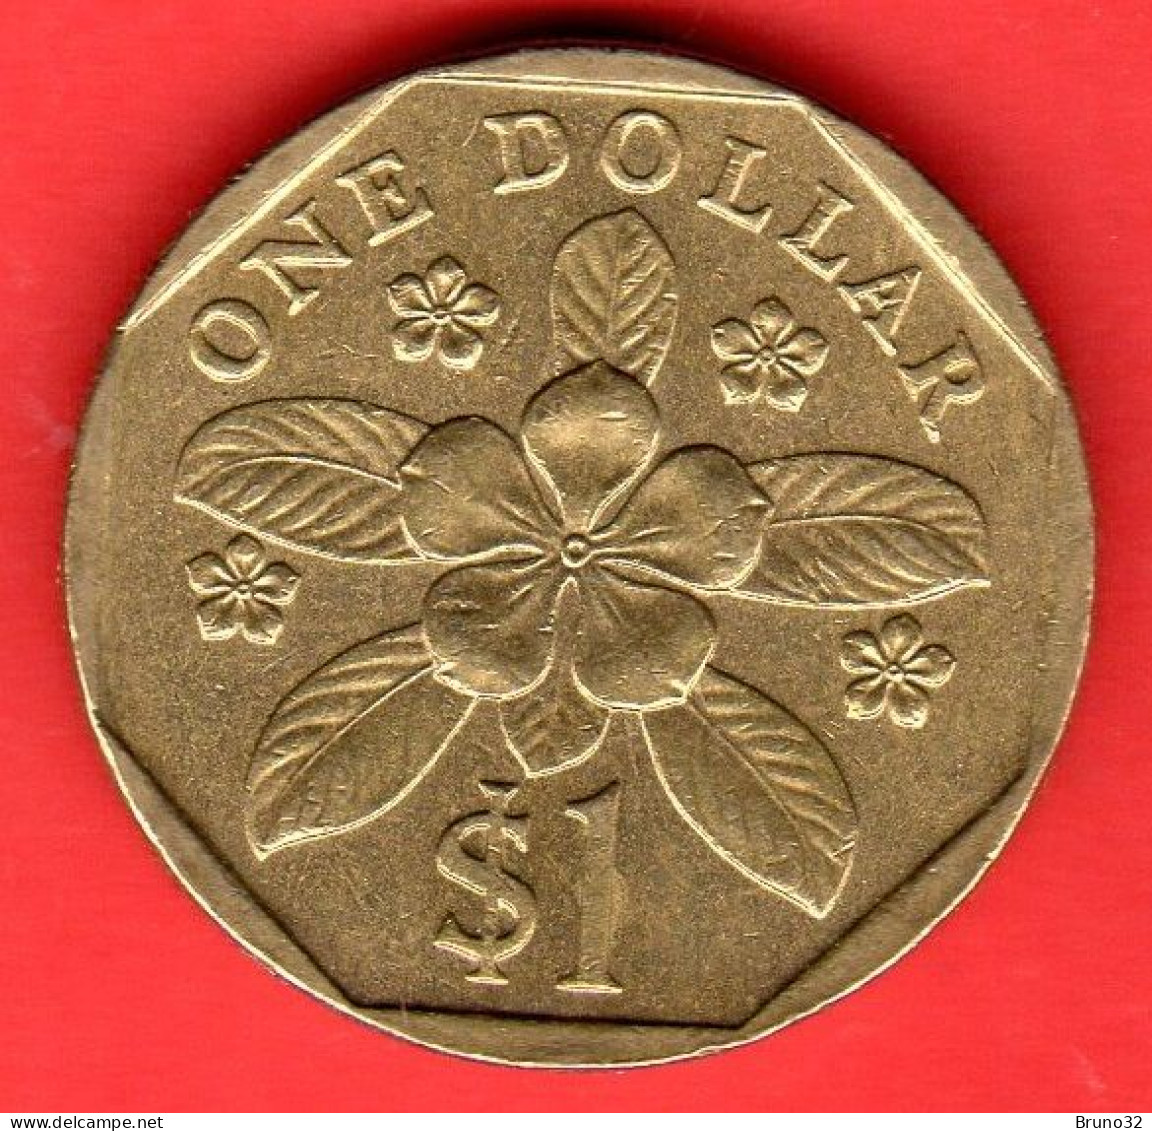 SINGAPORE - Singapura - 1997 - 1 Dollar - QFDC/aUNC - Come Da Foto - Singapore